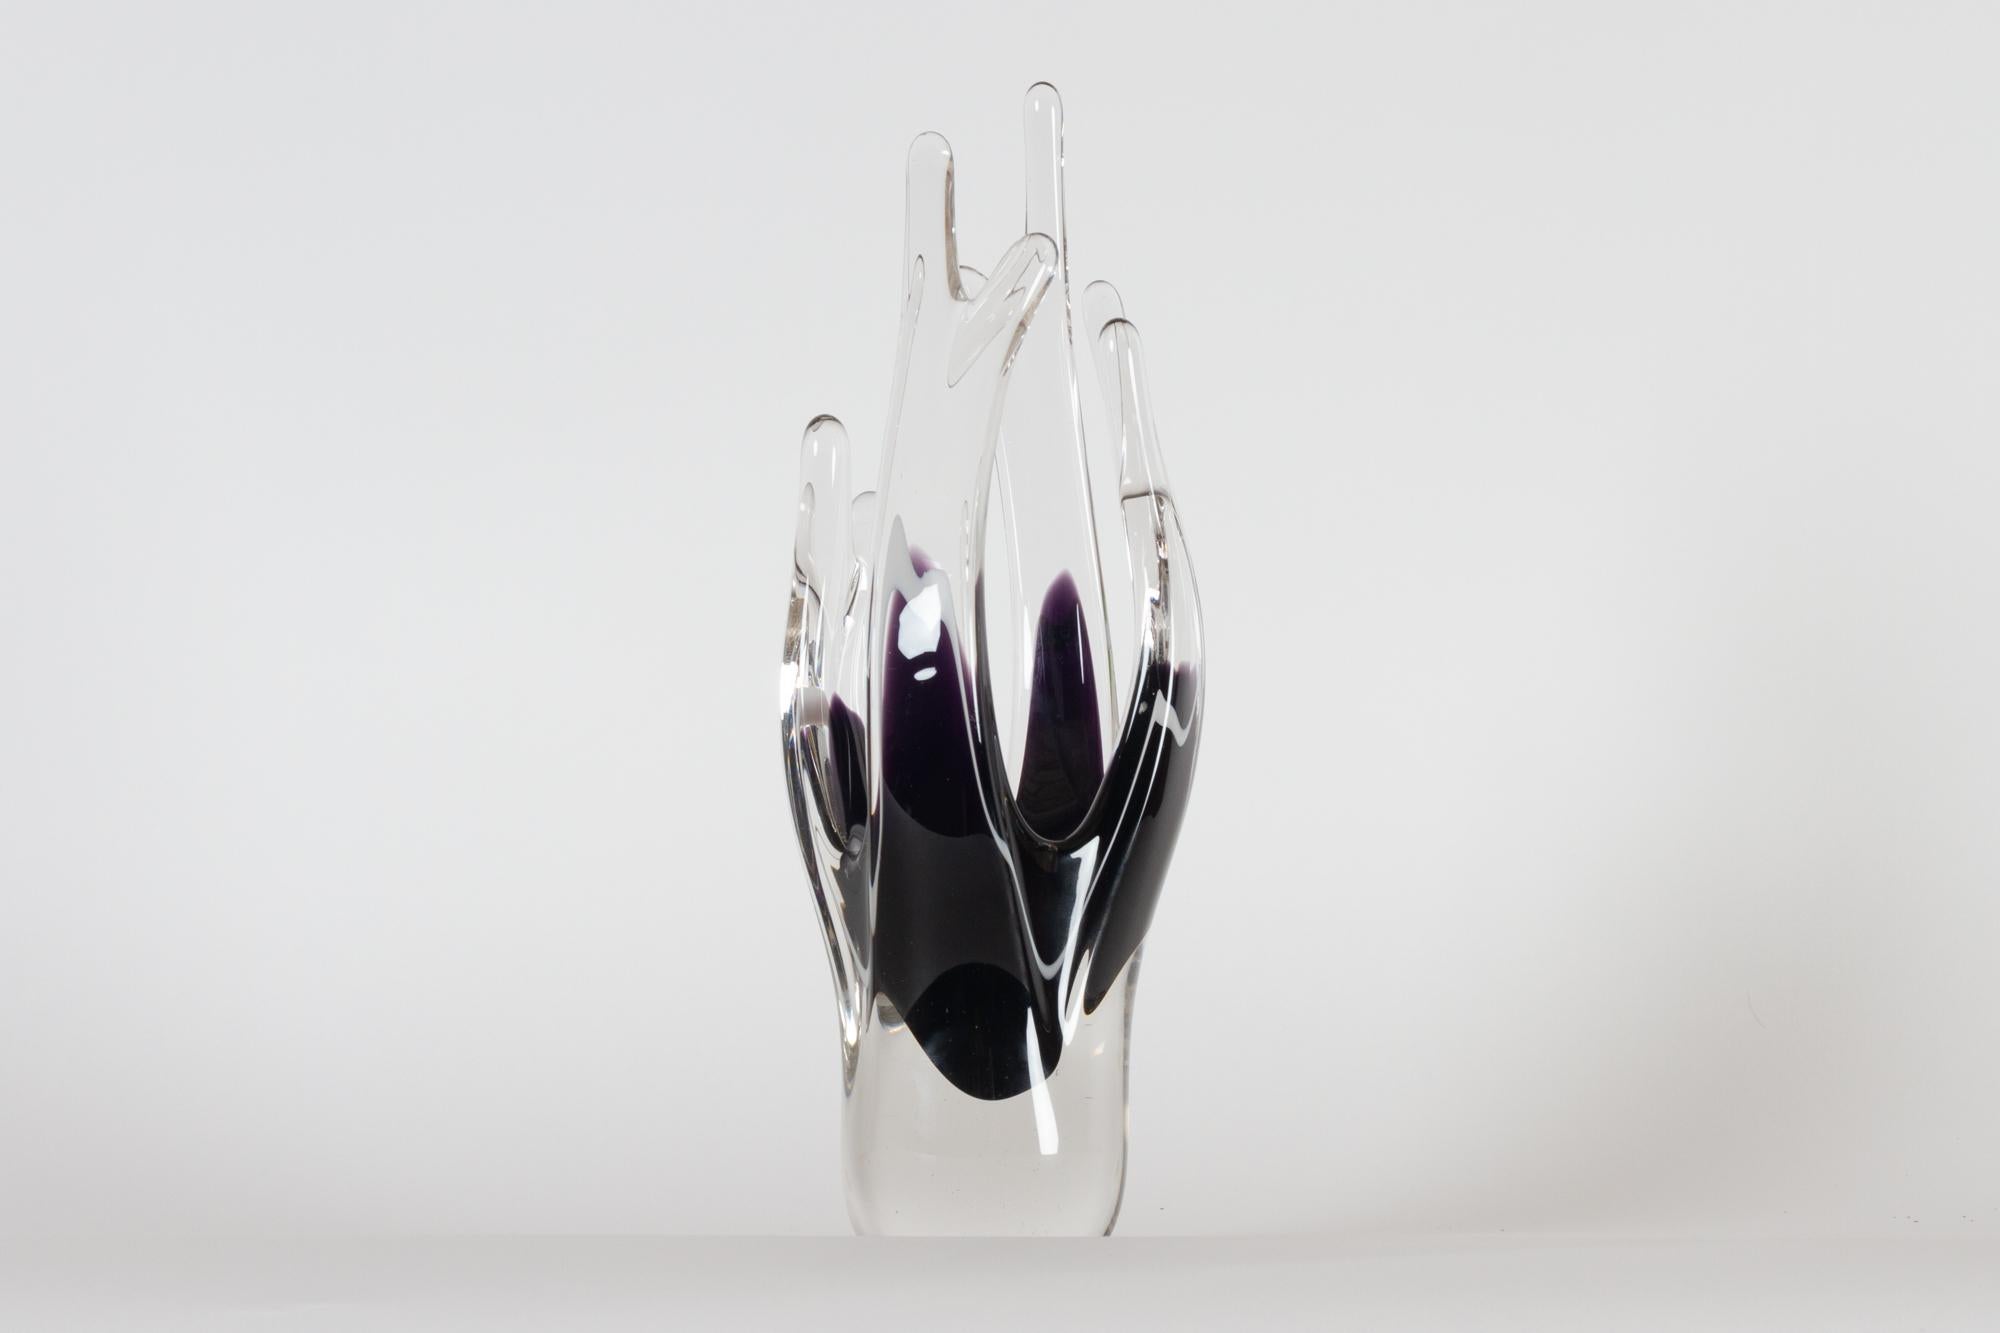 Vase en verre Flygsfors Coquille Fantasia par Paul Kedelv années 1950.
Grand vase suédois en verre Sommerso en verre clair et violet avec une bande blanche. Non signée.
Très bon état. Pas d'ébréchures ni de fissures.